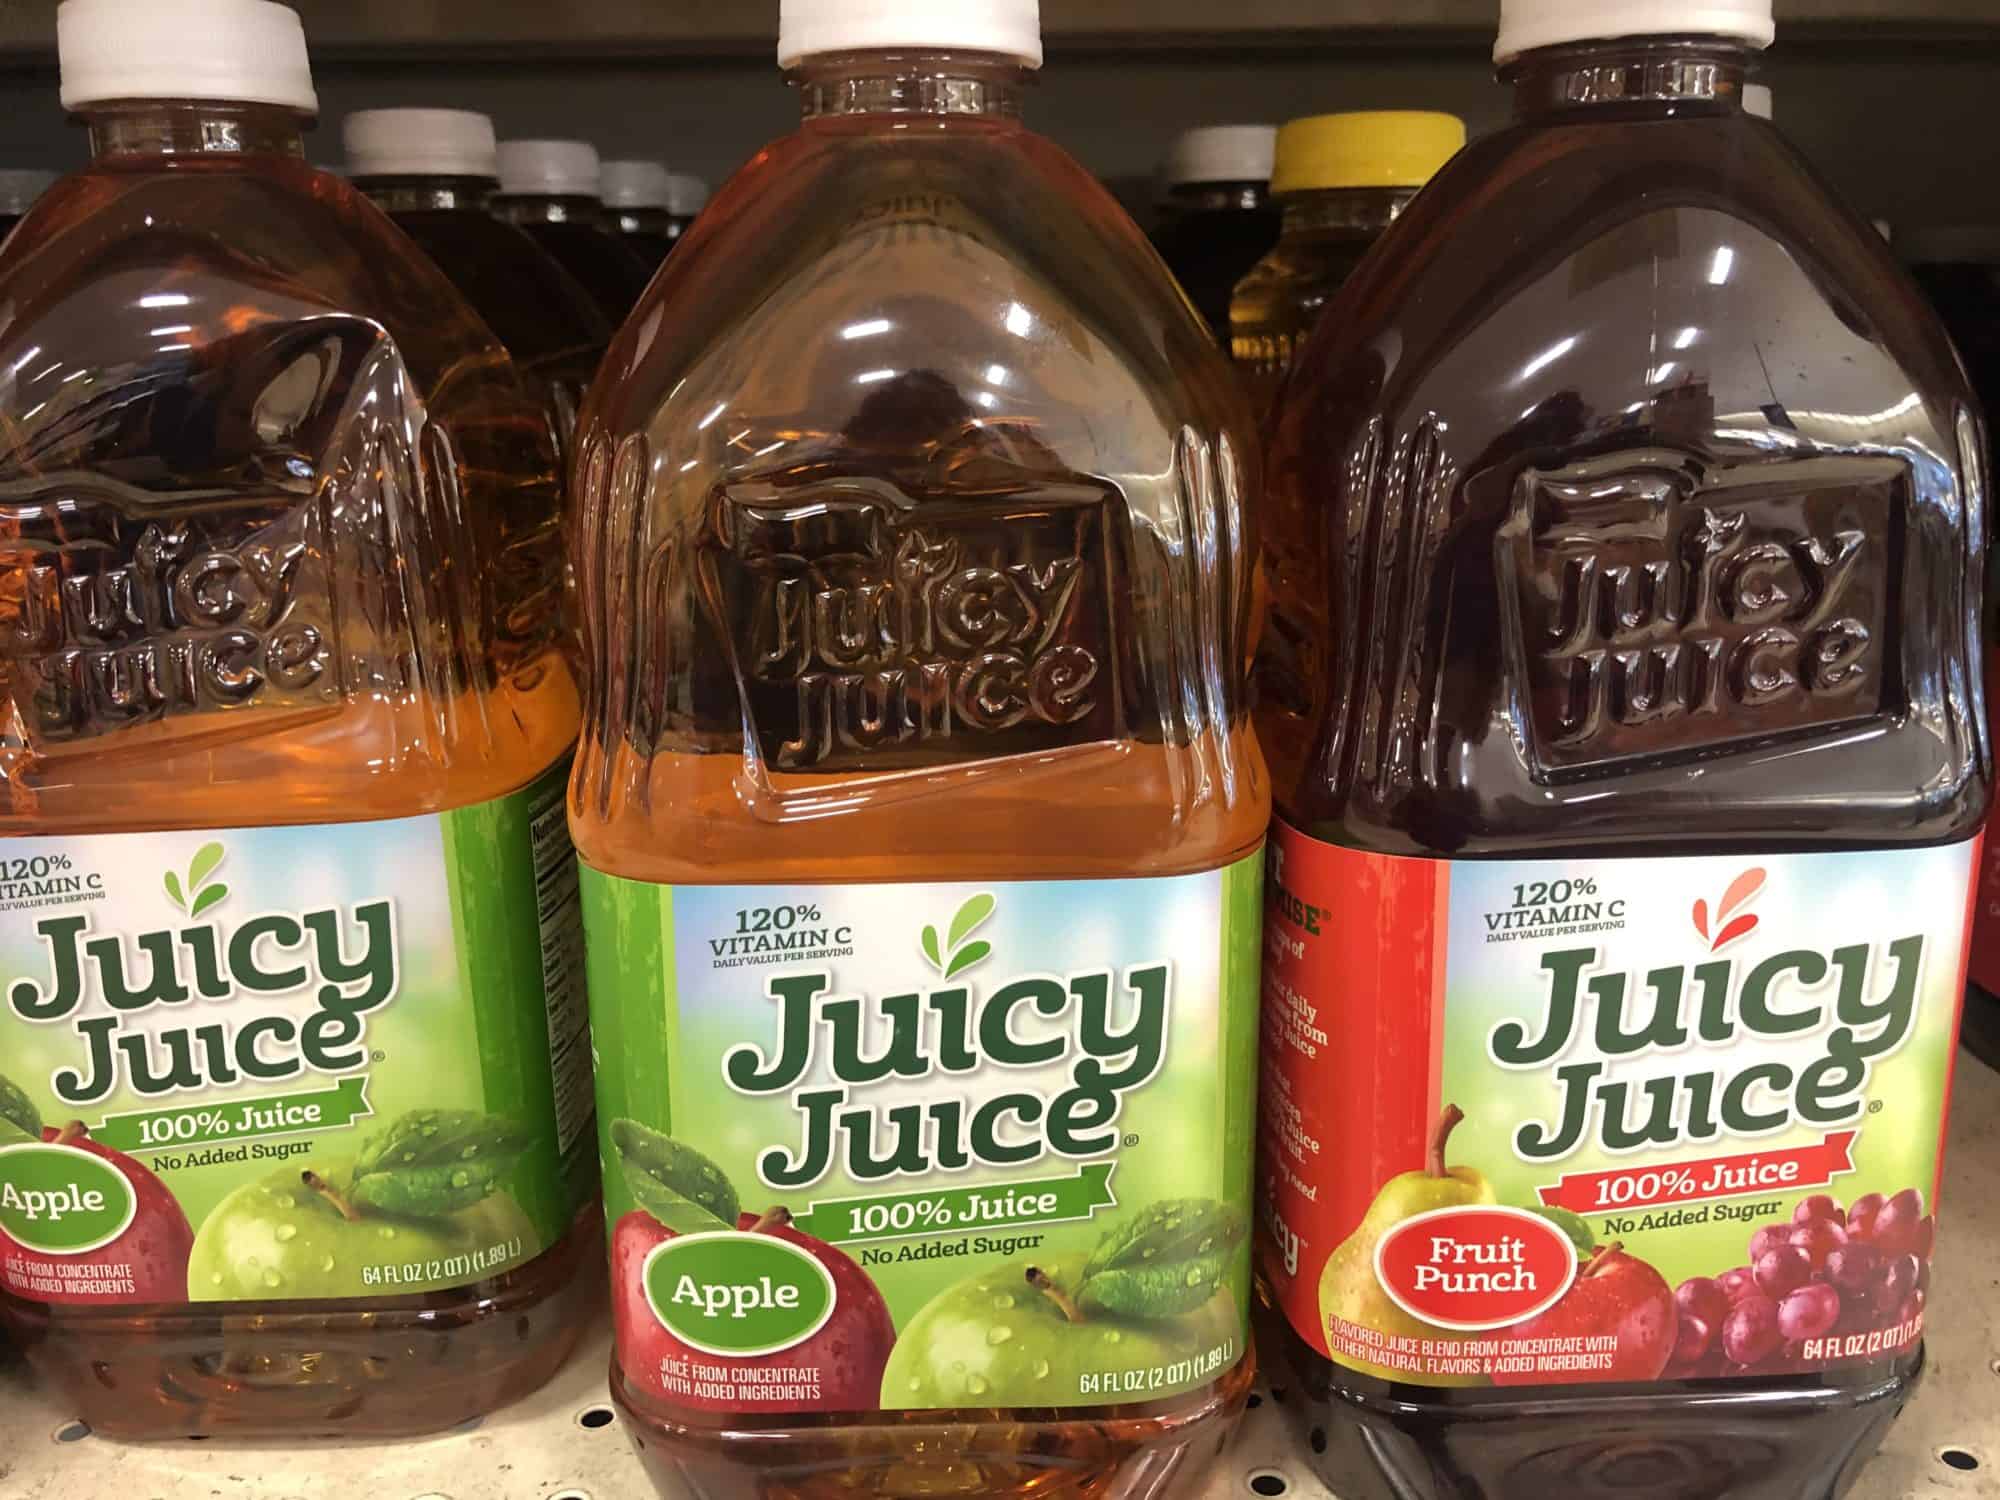 Giant: Juicy Juice 64 Oz Bottles Just $1.00 Each Thru 11/28!